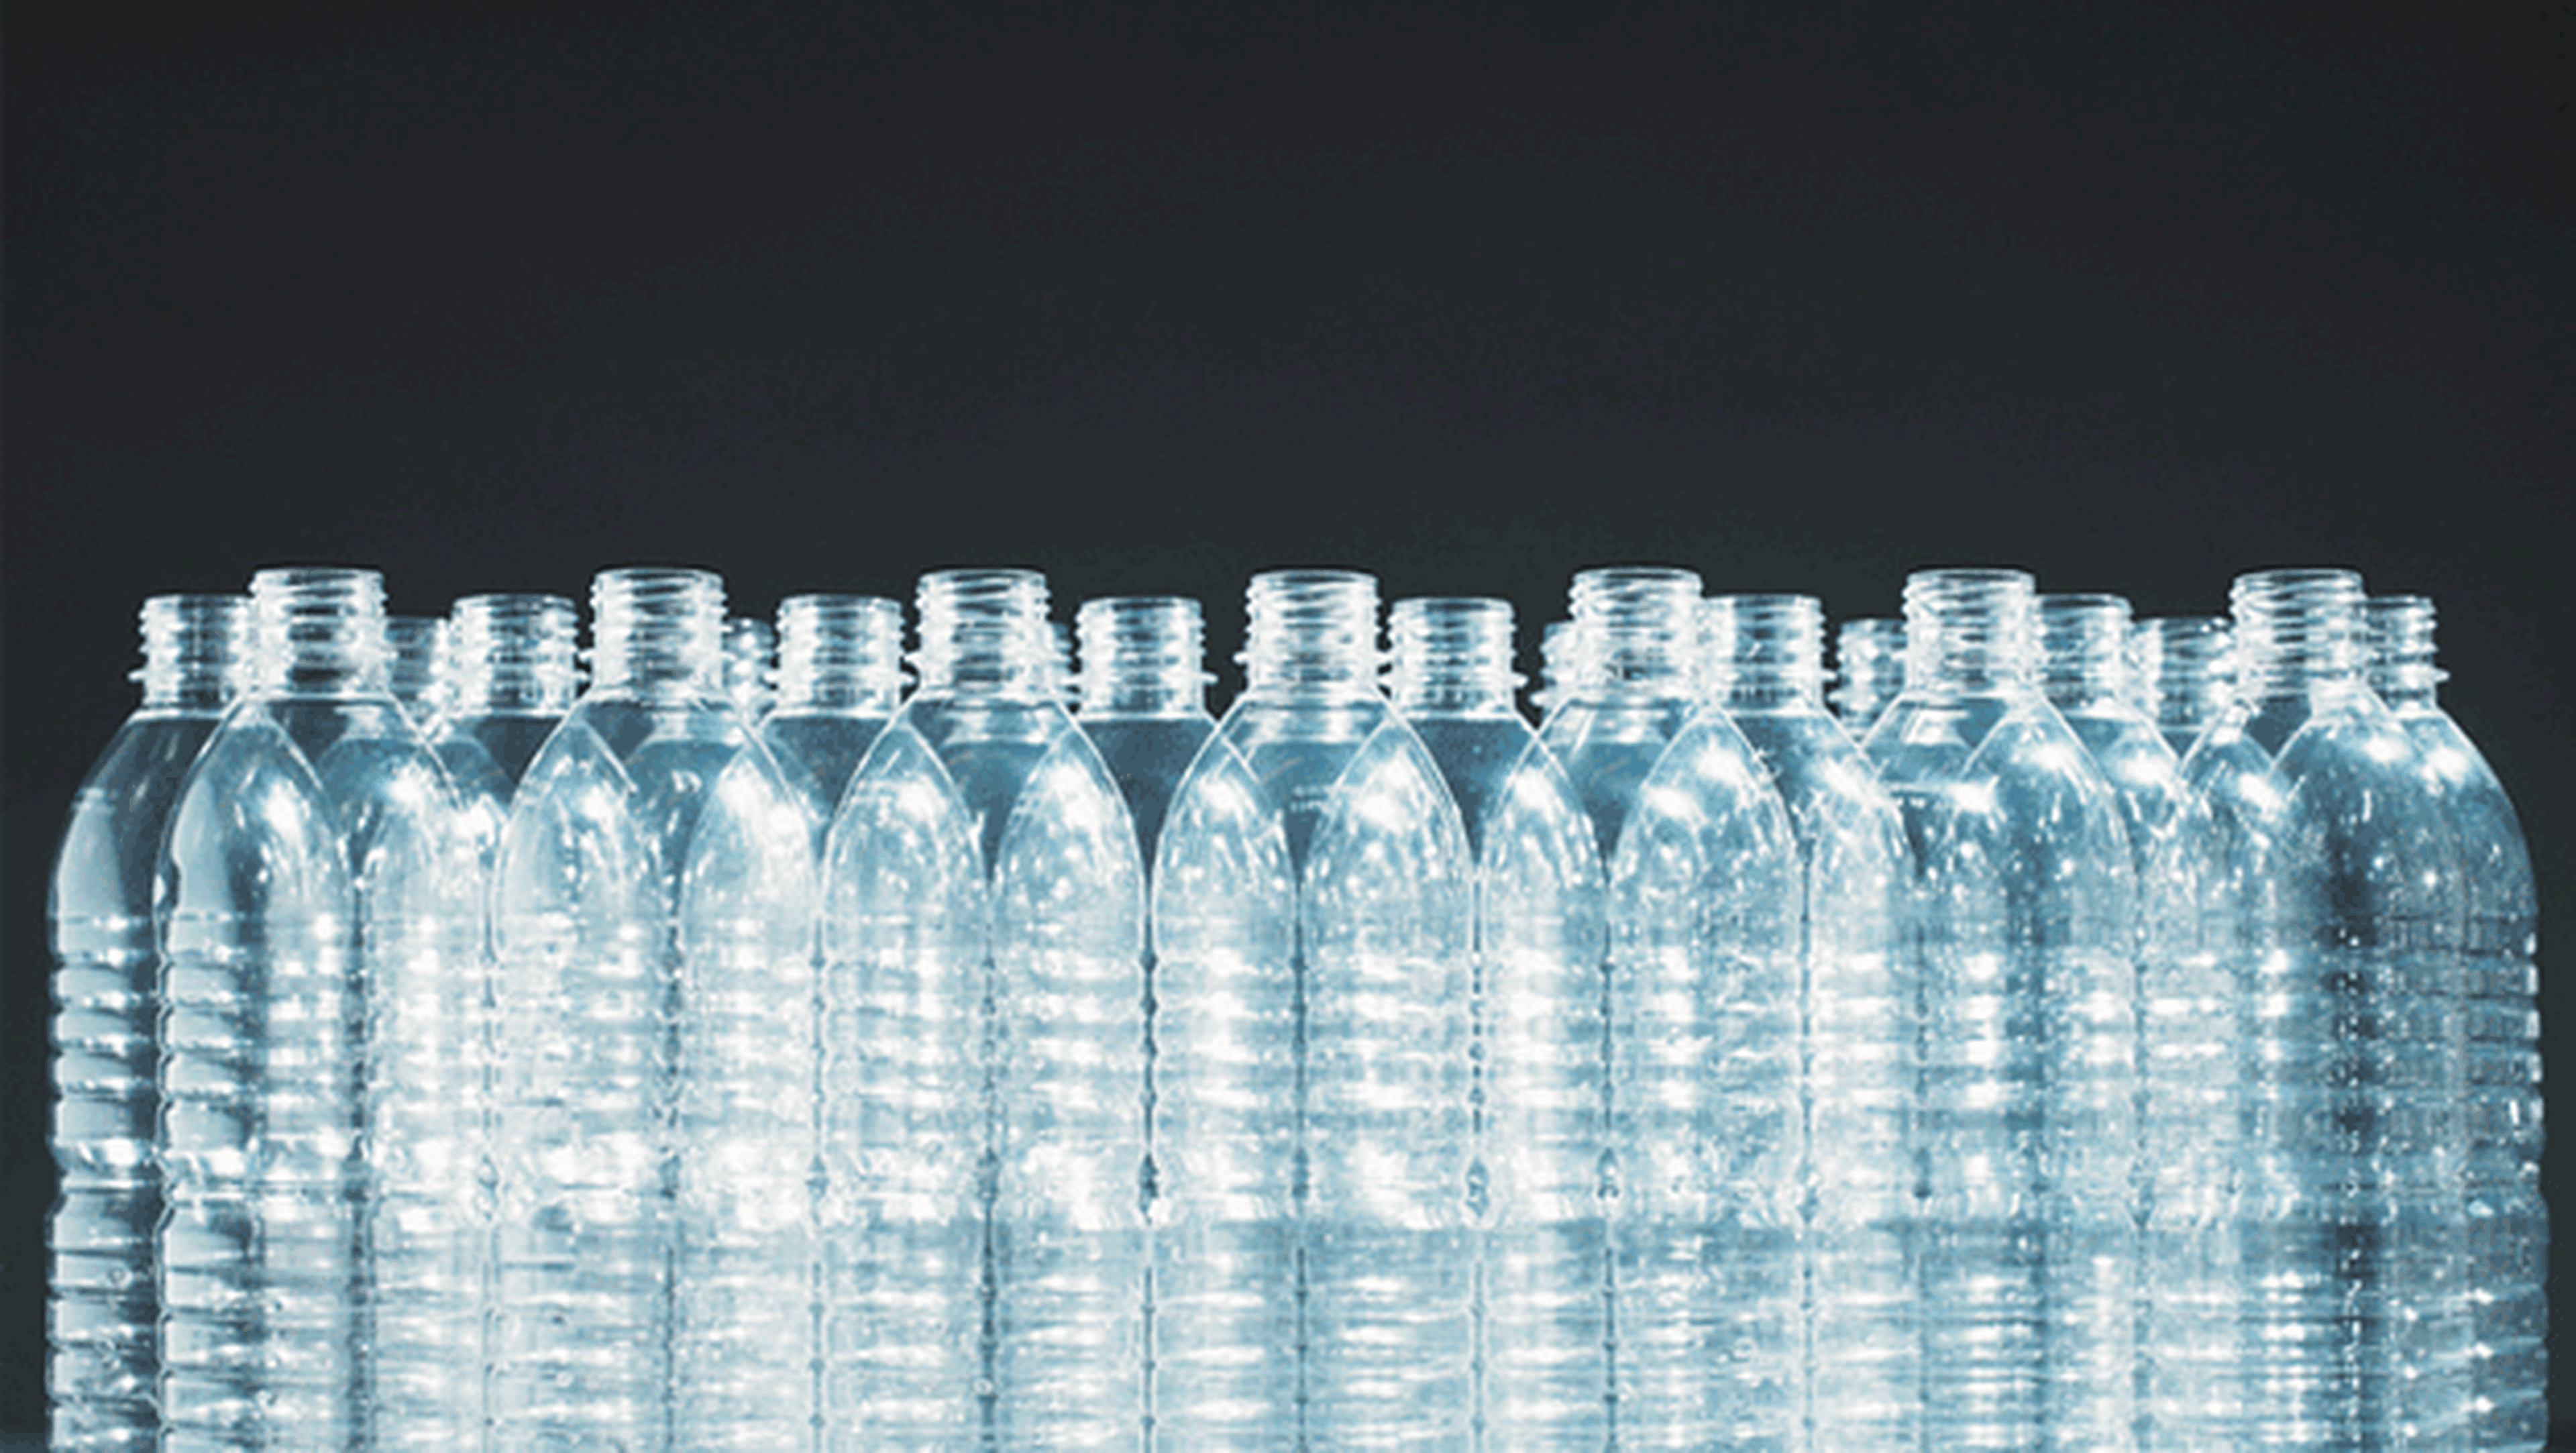 Cuántas partículas de plástico hay en las botellas de agua